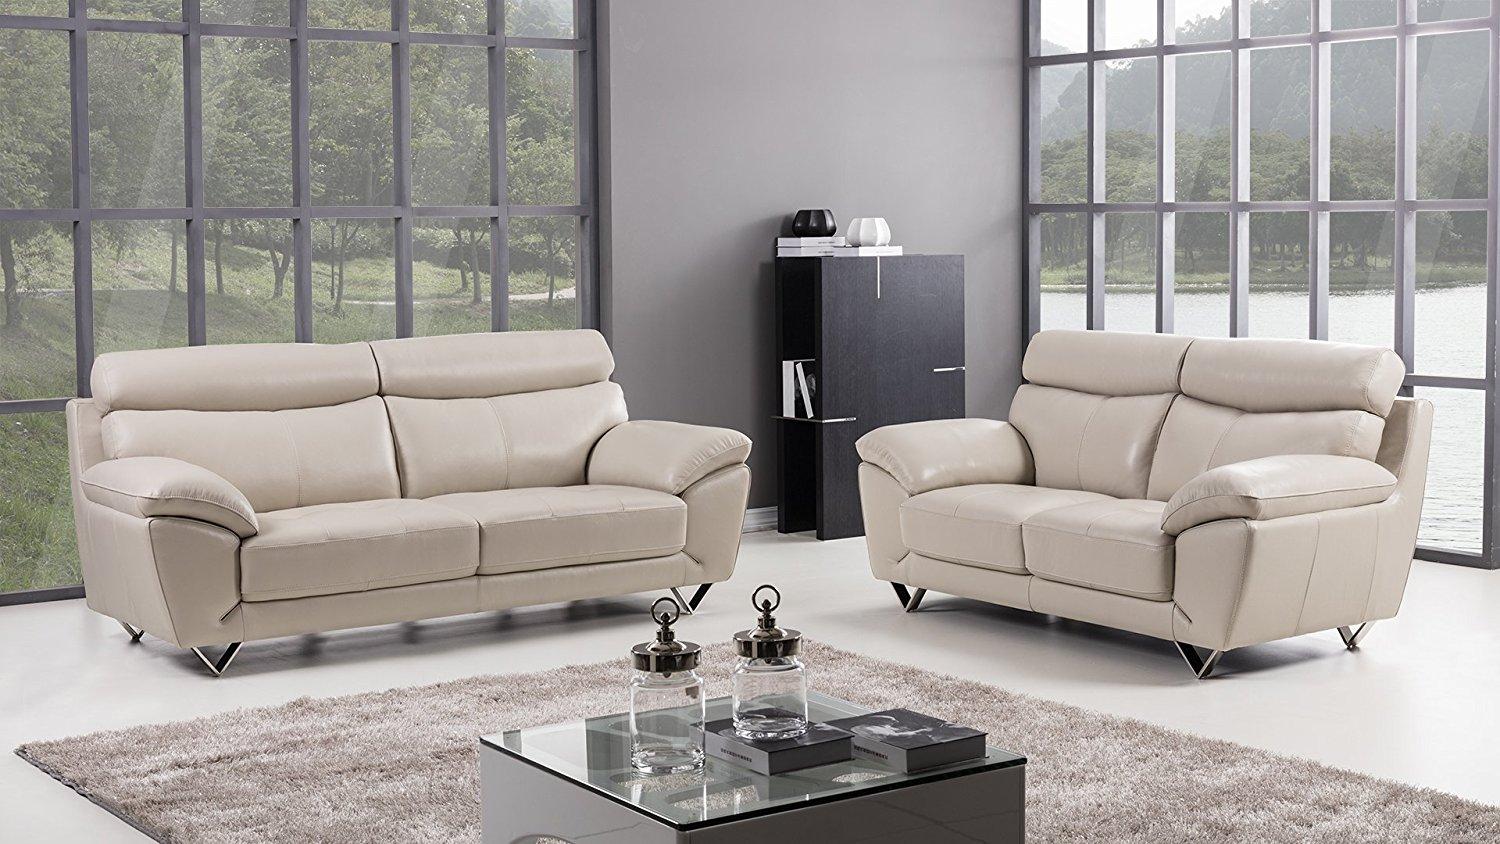 Contemporary, Modern Sofa Set EK078-LG EK078-LG Set-2 in Light Gray Italian Leather